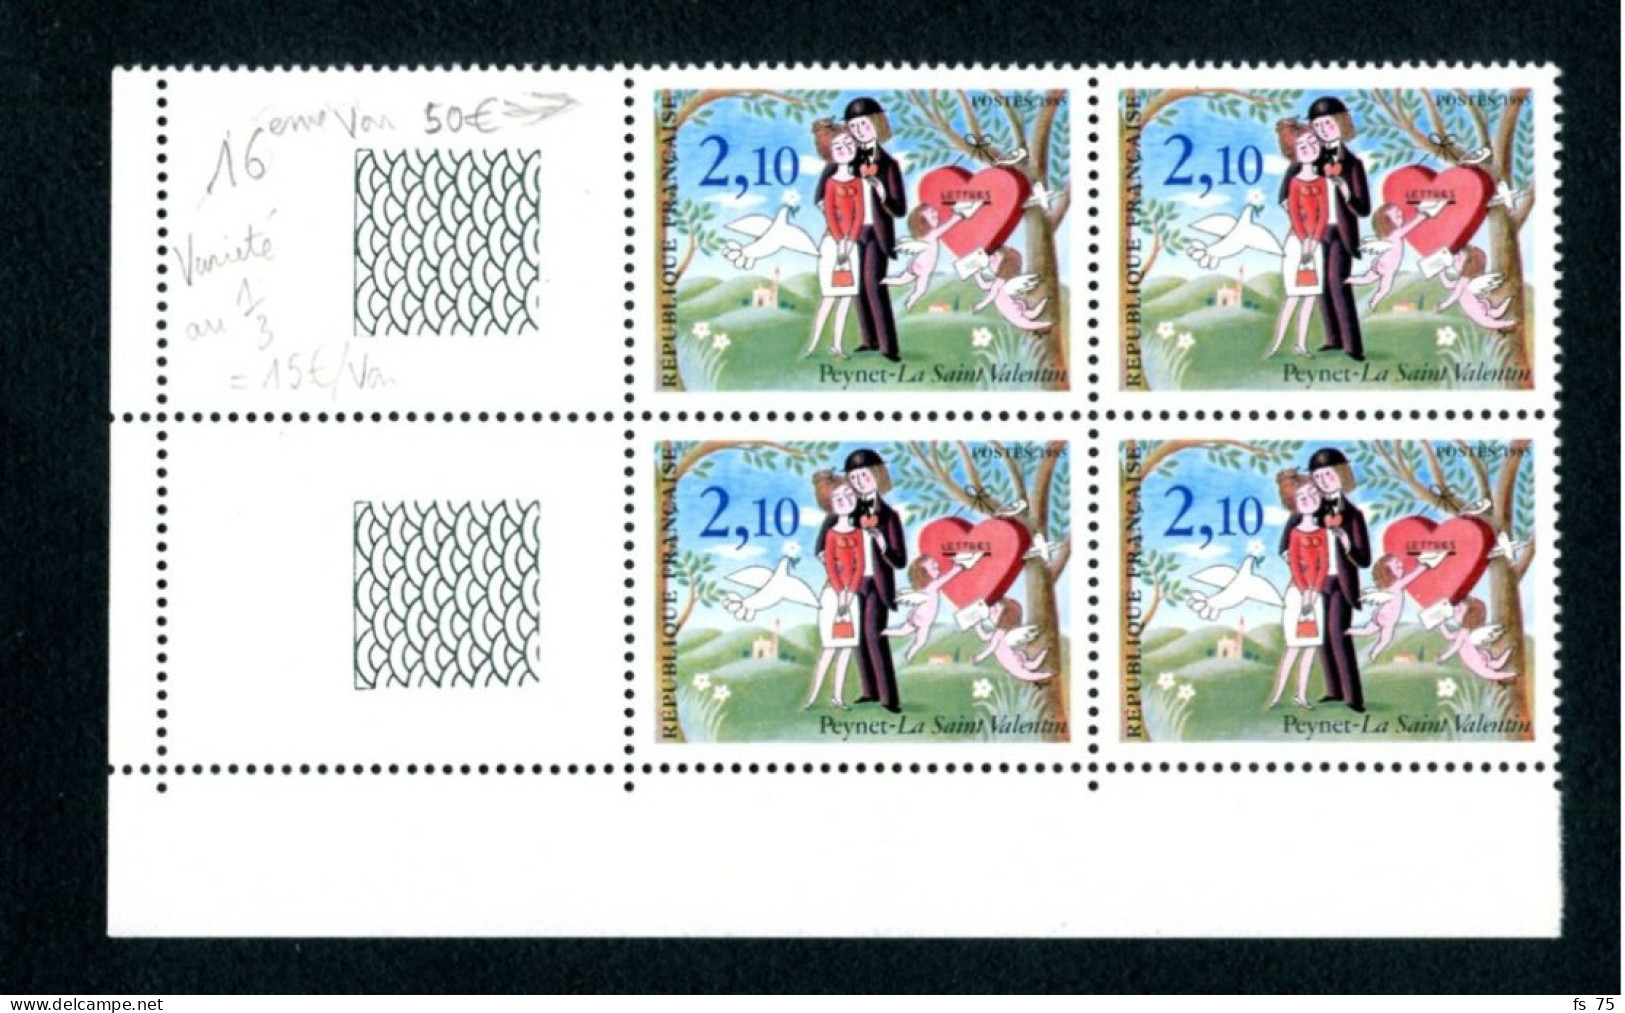 N°2354 2F10 ST VALENTIN - 6 VARIETES OISEAU SUR LA BRANCHE DANS 4 BLOCS DE 4 - 1 PAIRE ET 1 ISOLE - SANS CHARNIERE ** - Unused Stamps